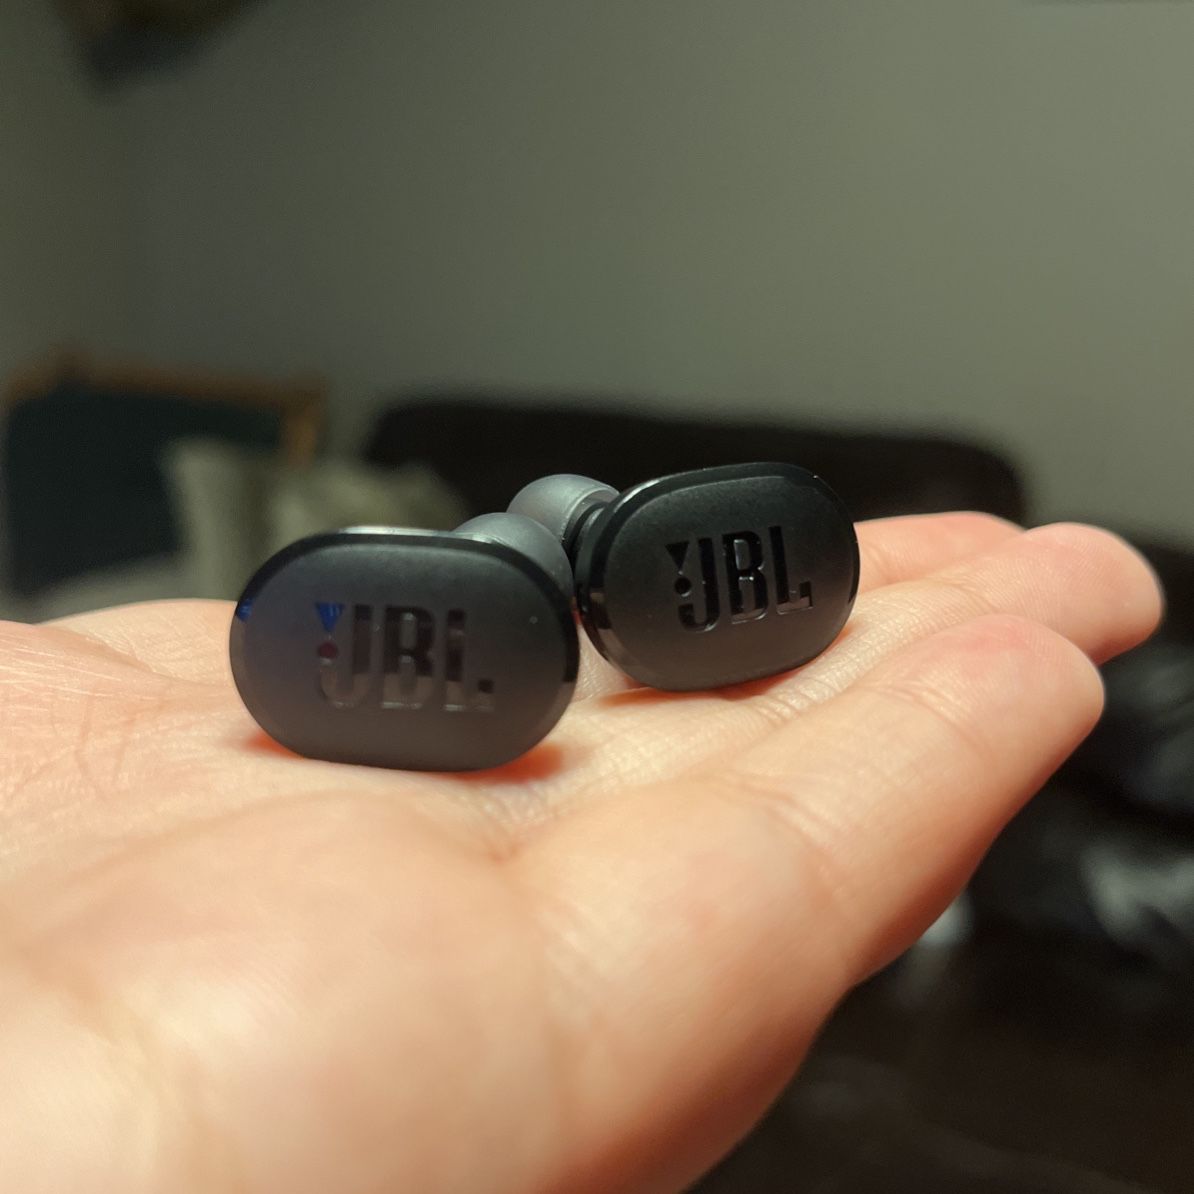 JBL Tune Bud wireless earbuds